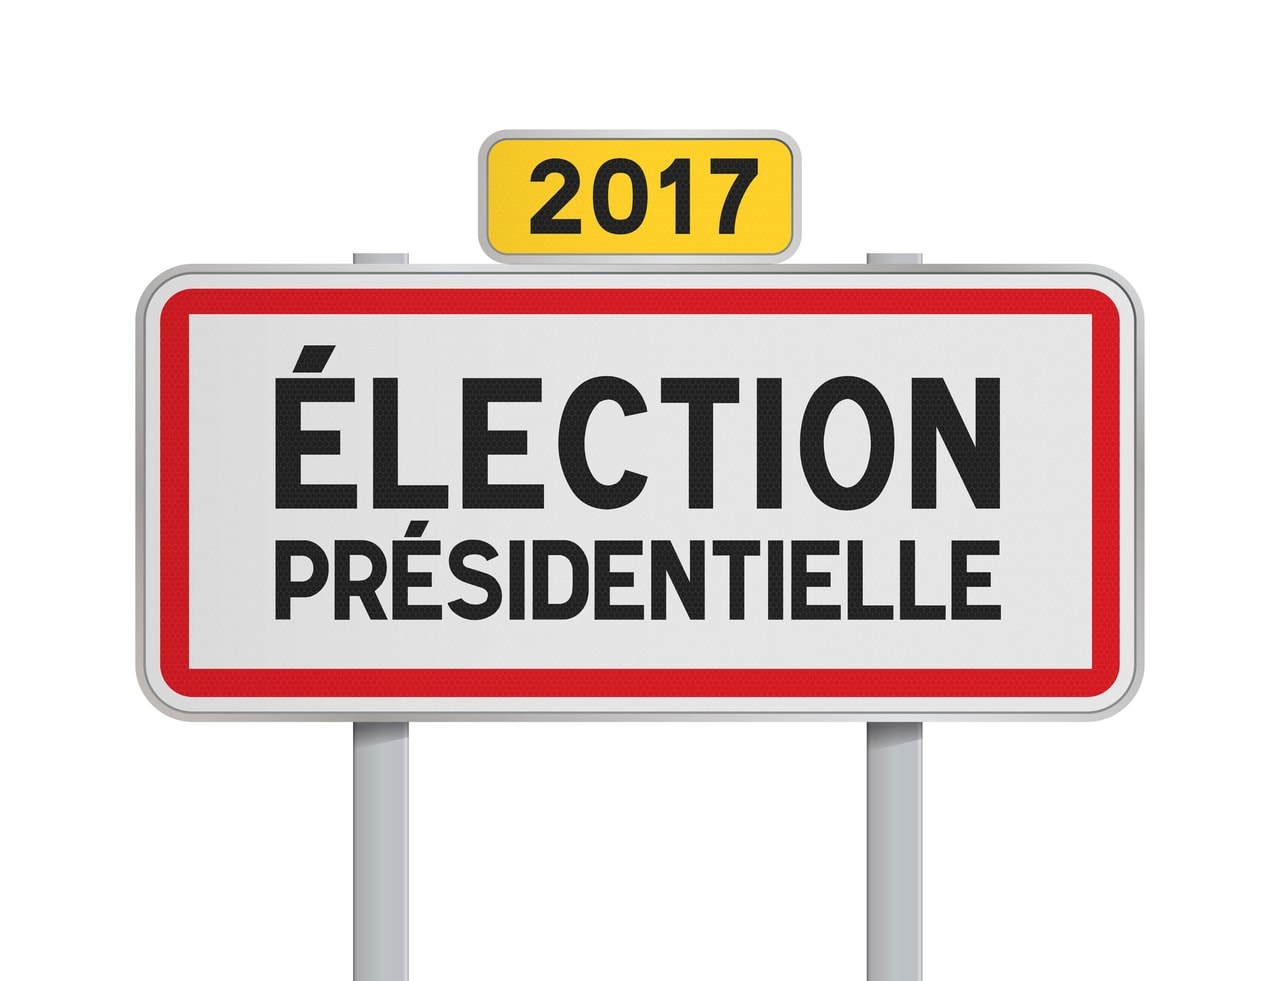 présidentielle 2017